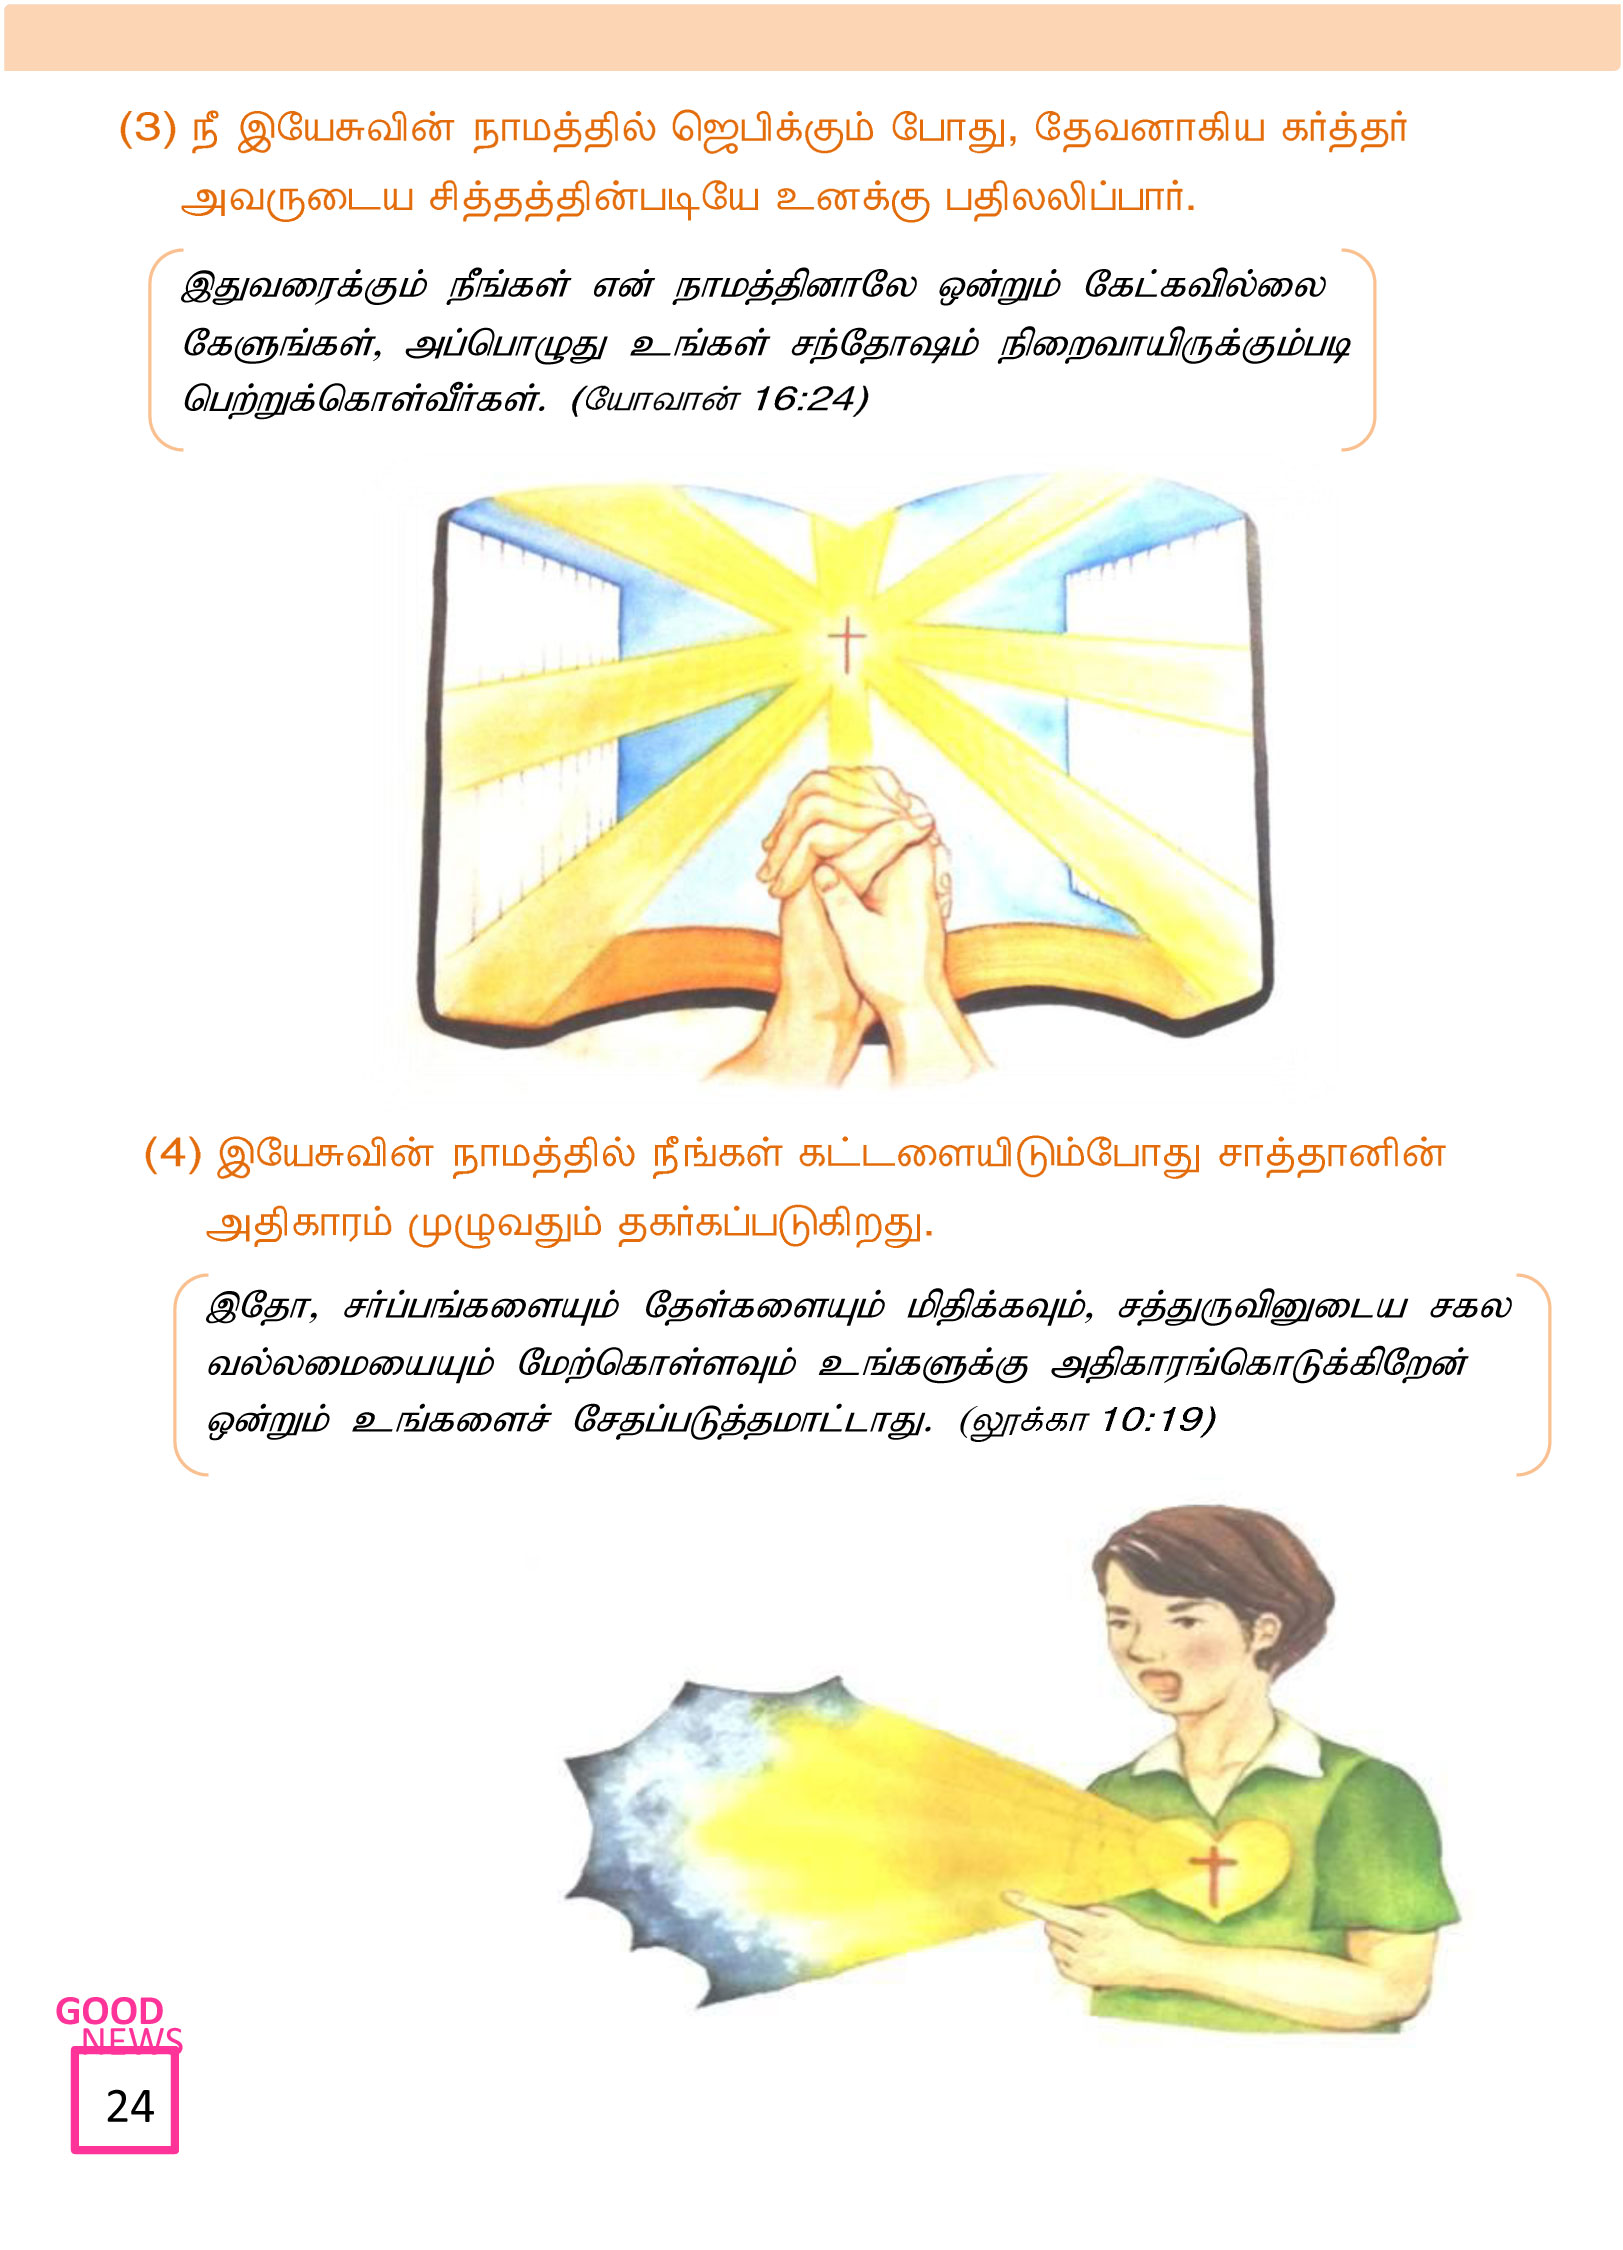 Tamil-Evangelism-Book-Pdf-3-24.jpg